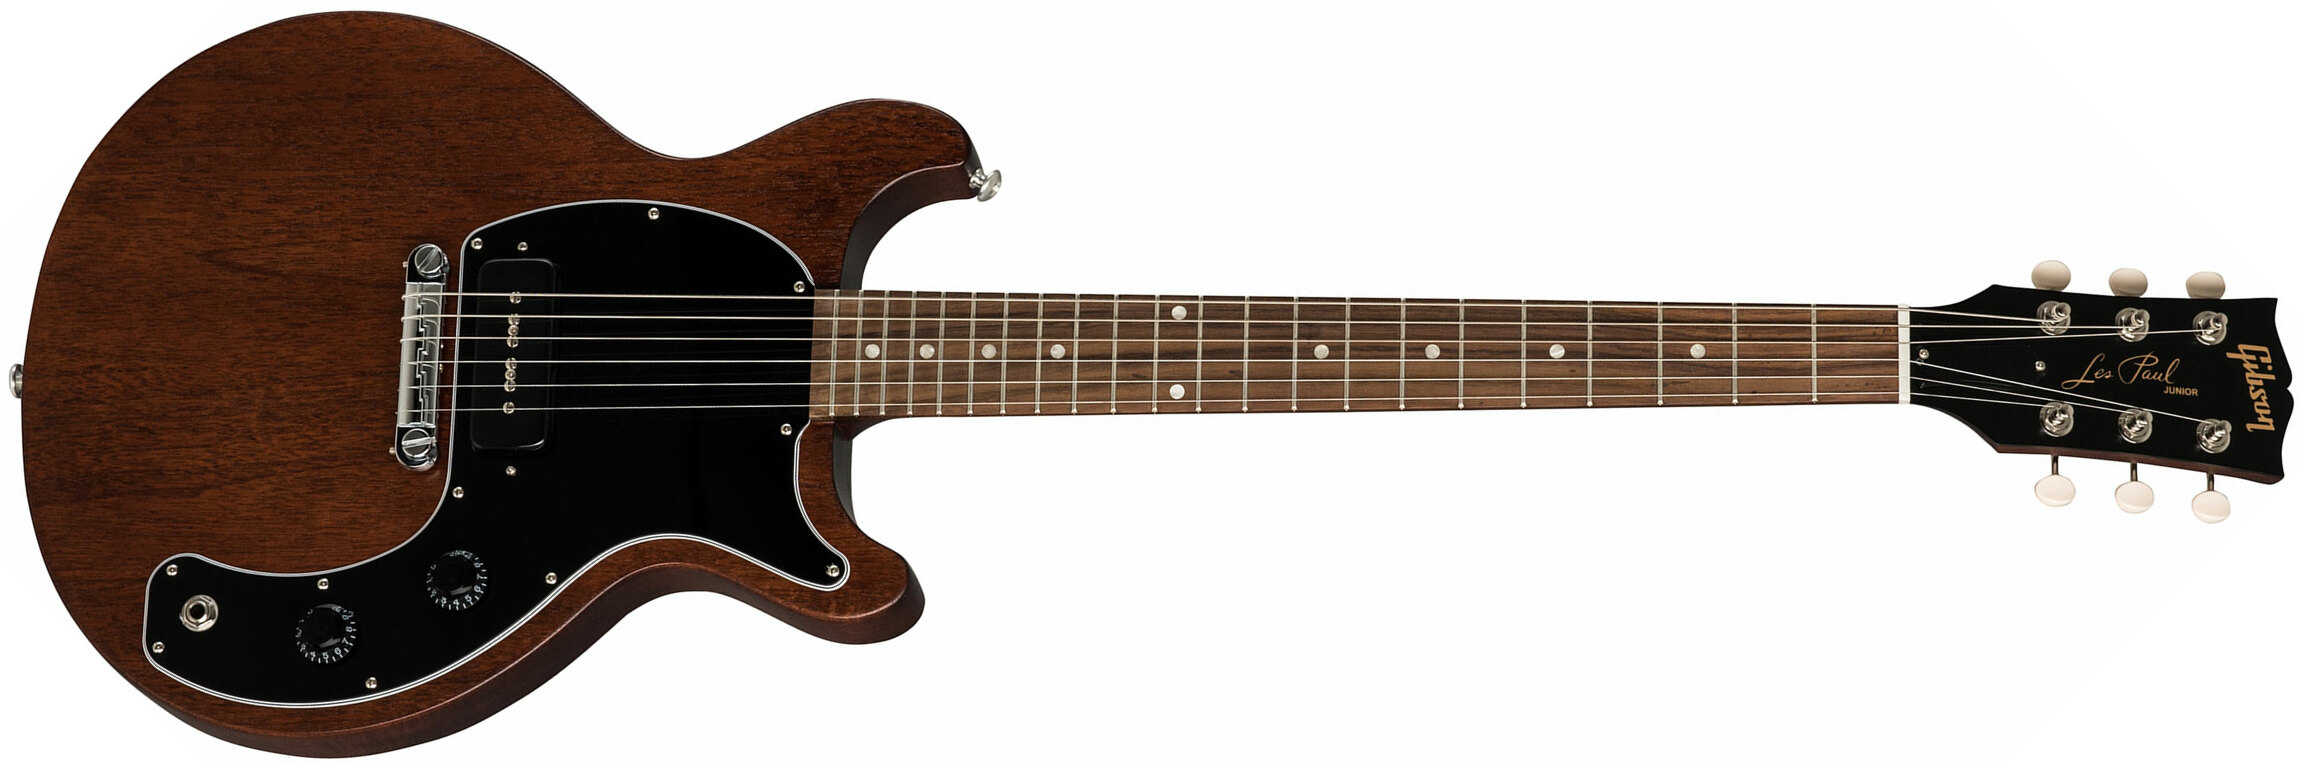 Gibson Les Paul Junior Tribute 2019 P90 Ht Rw - Worn Brown - Guitare Électrique Single Cut - Main picture